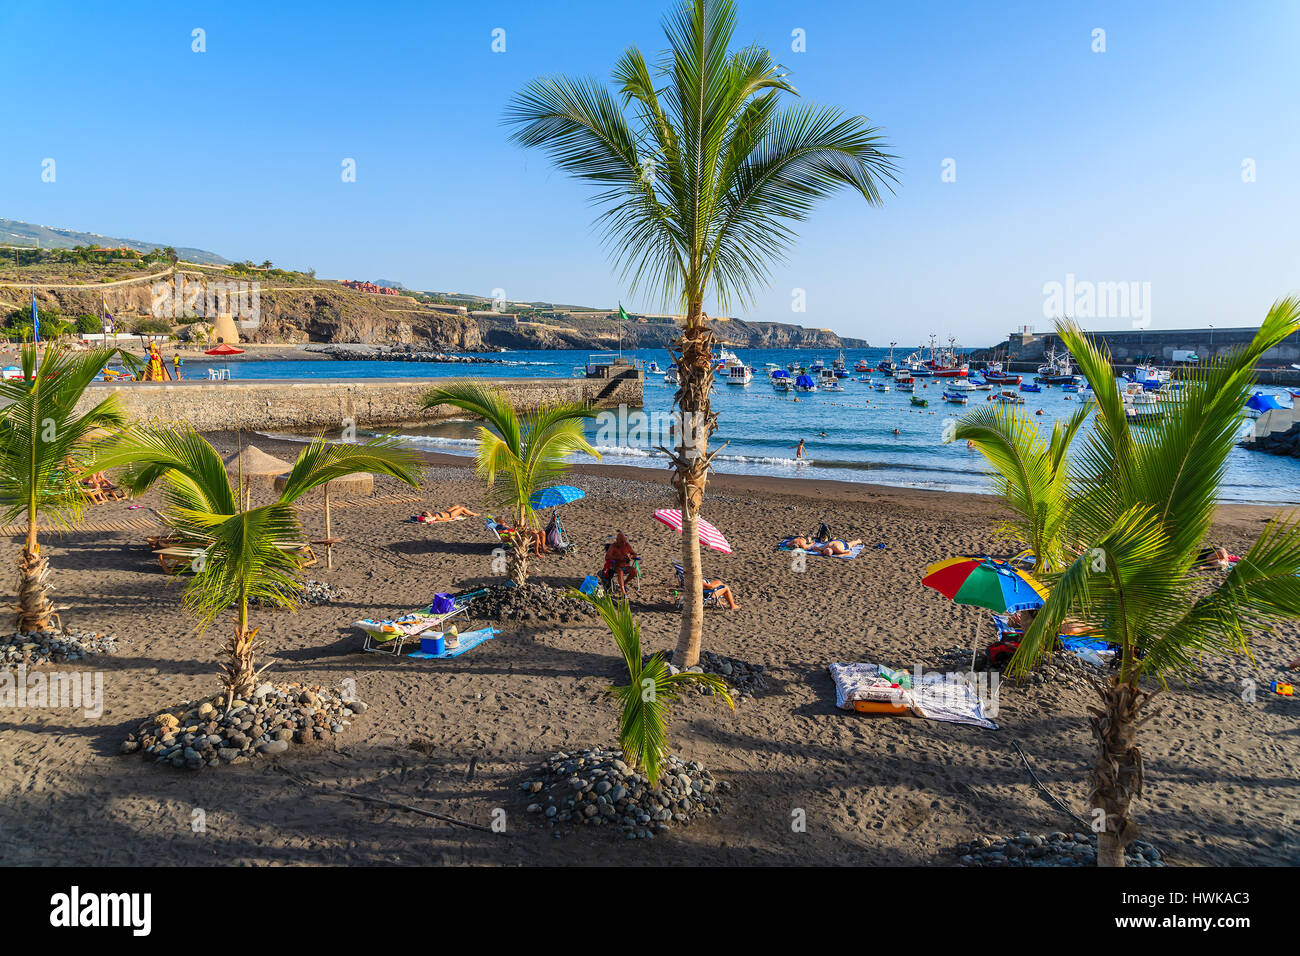 Plage de SAN JUAN, l'ÎLE DE TENERIFE - NOV 15, 2015 : les gens se détendre sur une plage magnifique avec des palmiers à San Juan, ville côtière de l'île de Ténérife, Espagne. Banque D'Images